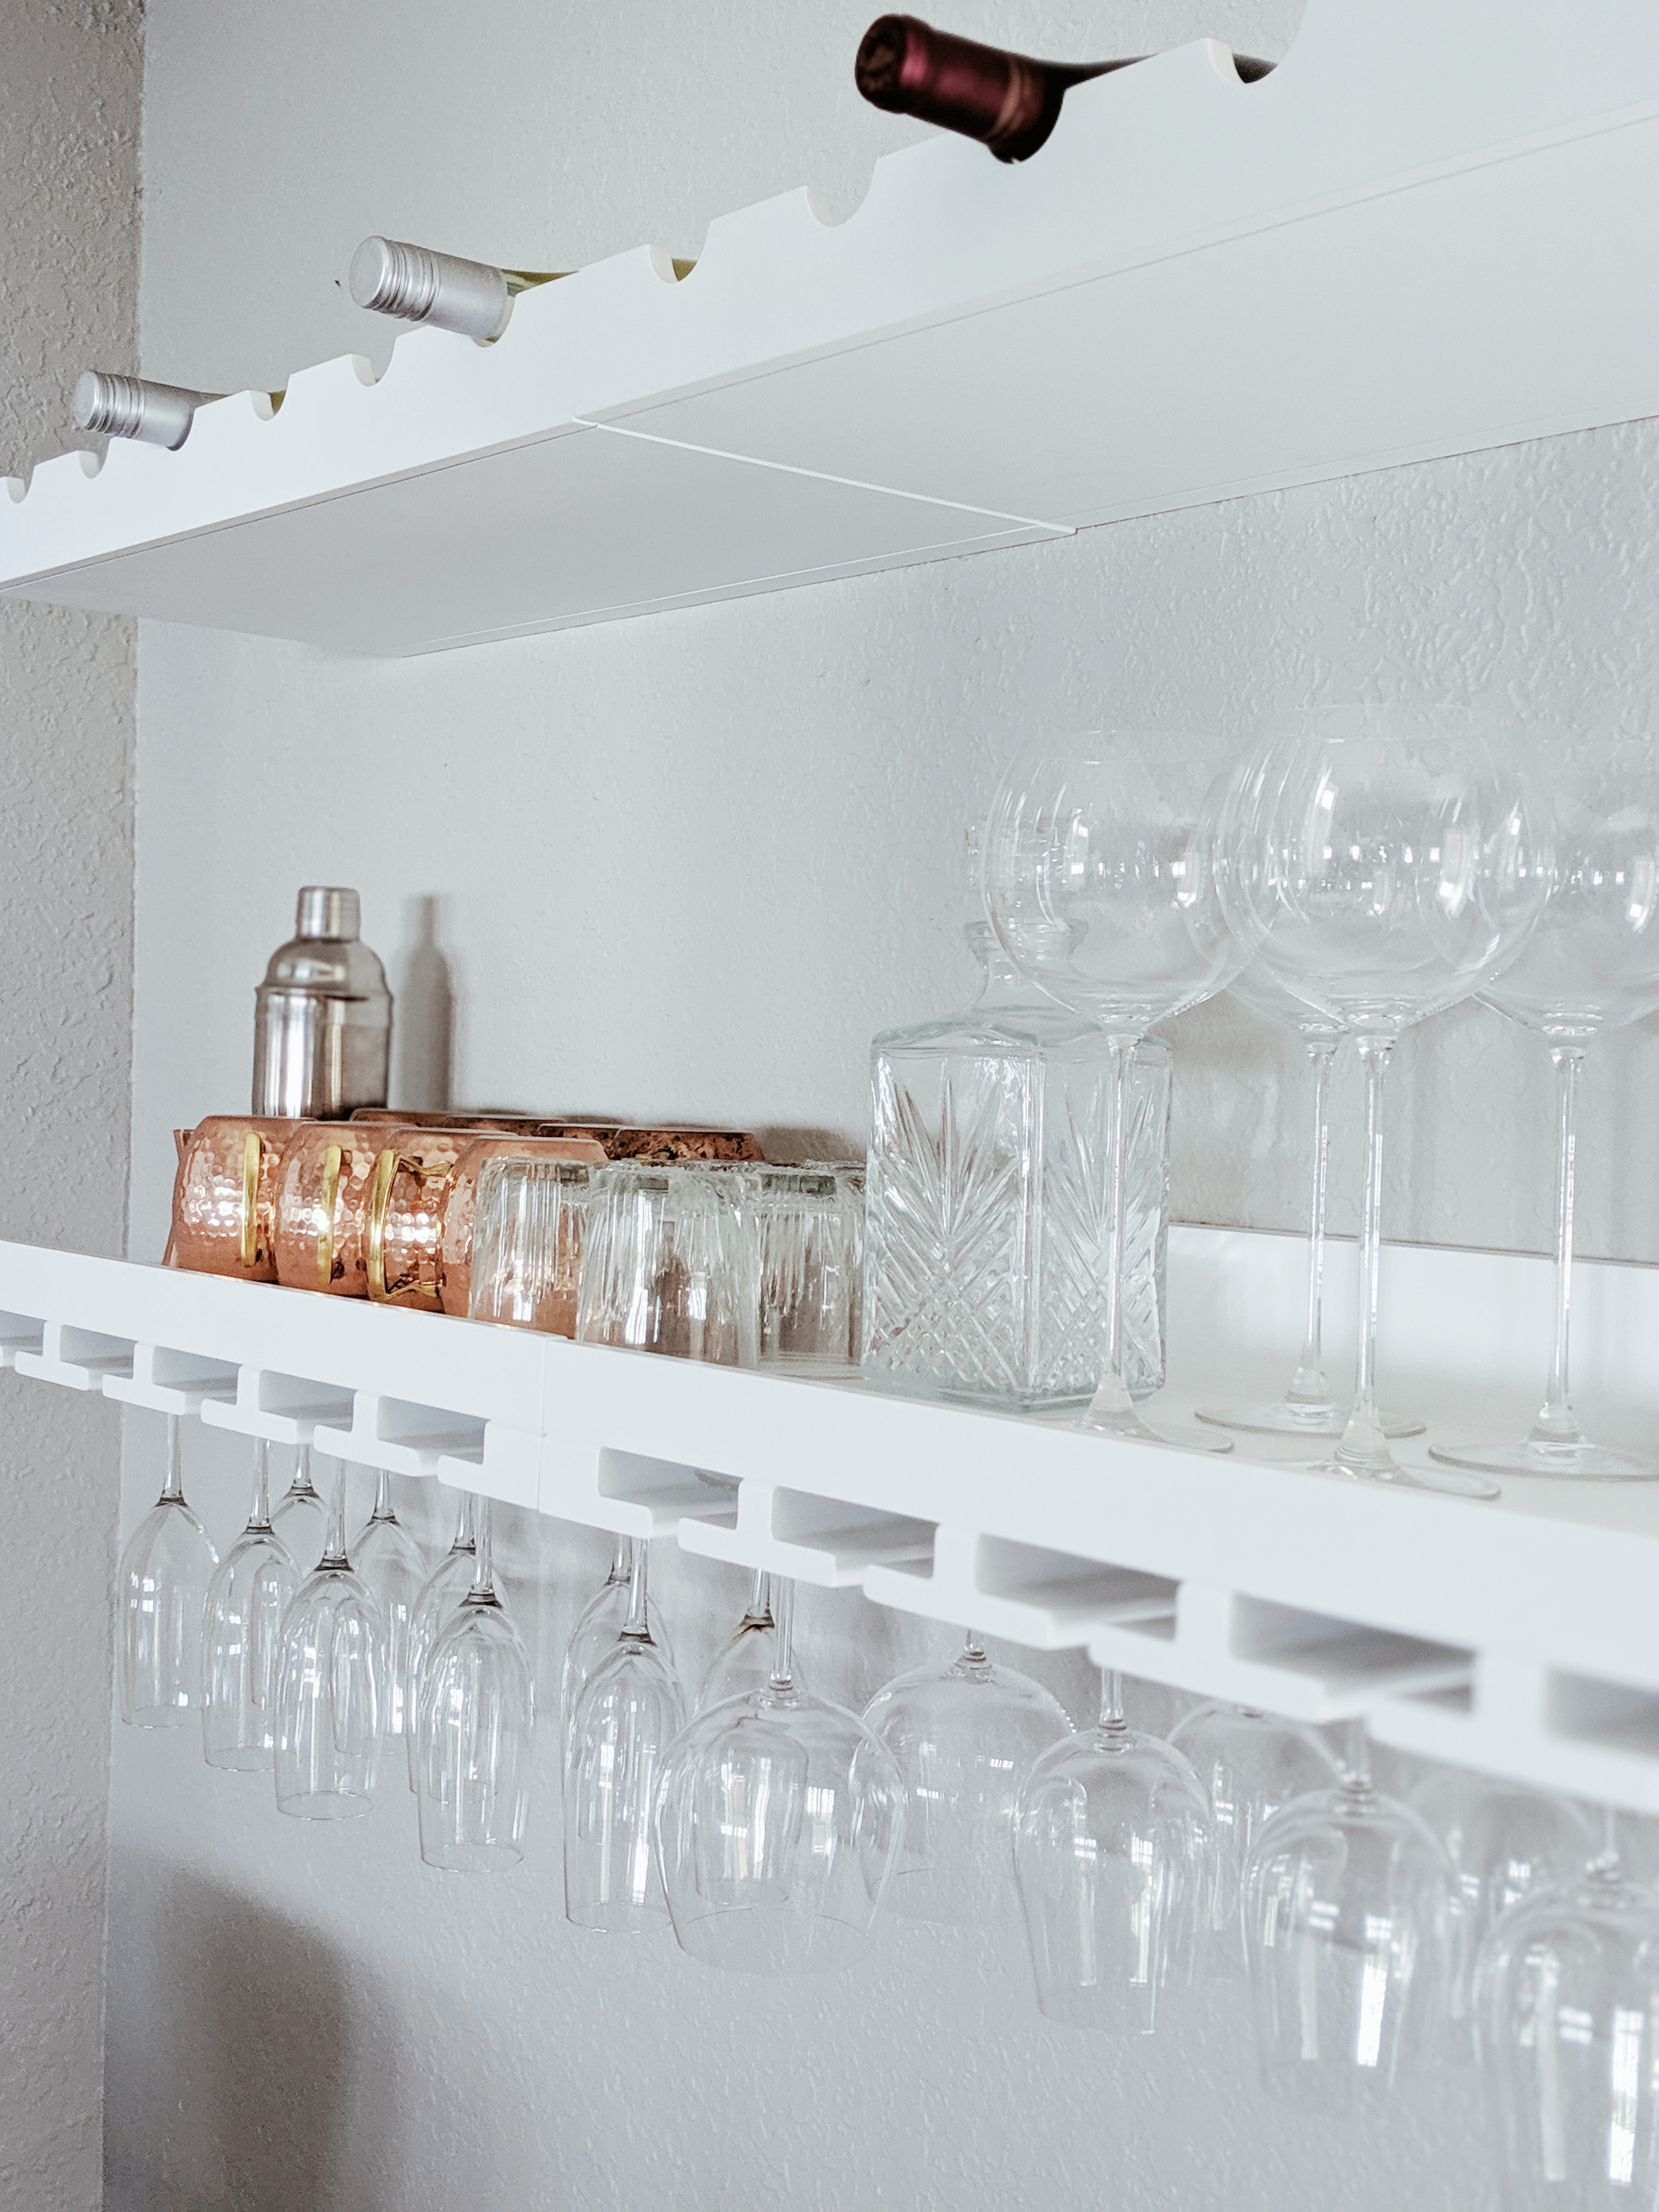 HD-Dining Room Floating Wine Shelves Floating bar